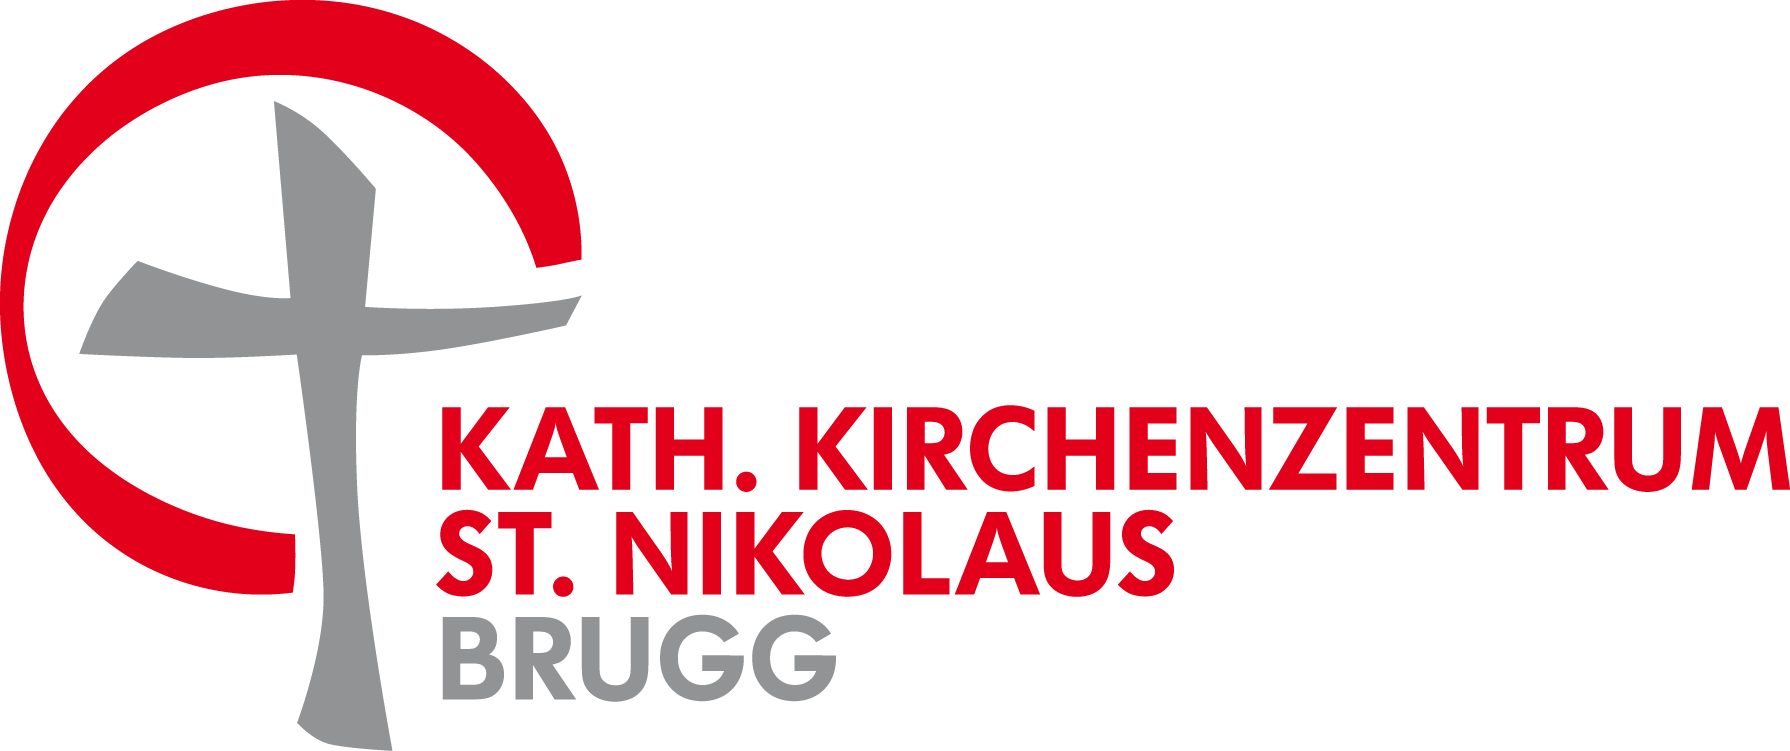 image-11882774-KathKirchenzentrumStNikolausBrugg_Logo-aab32.png